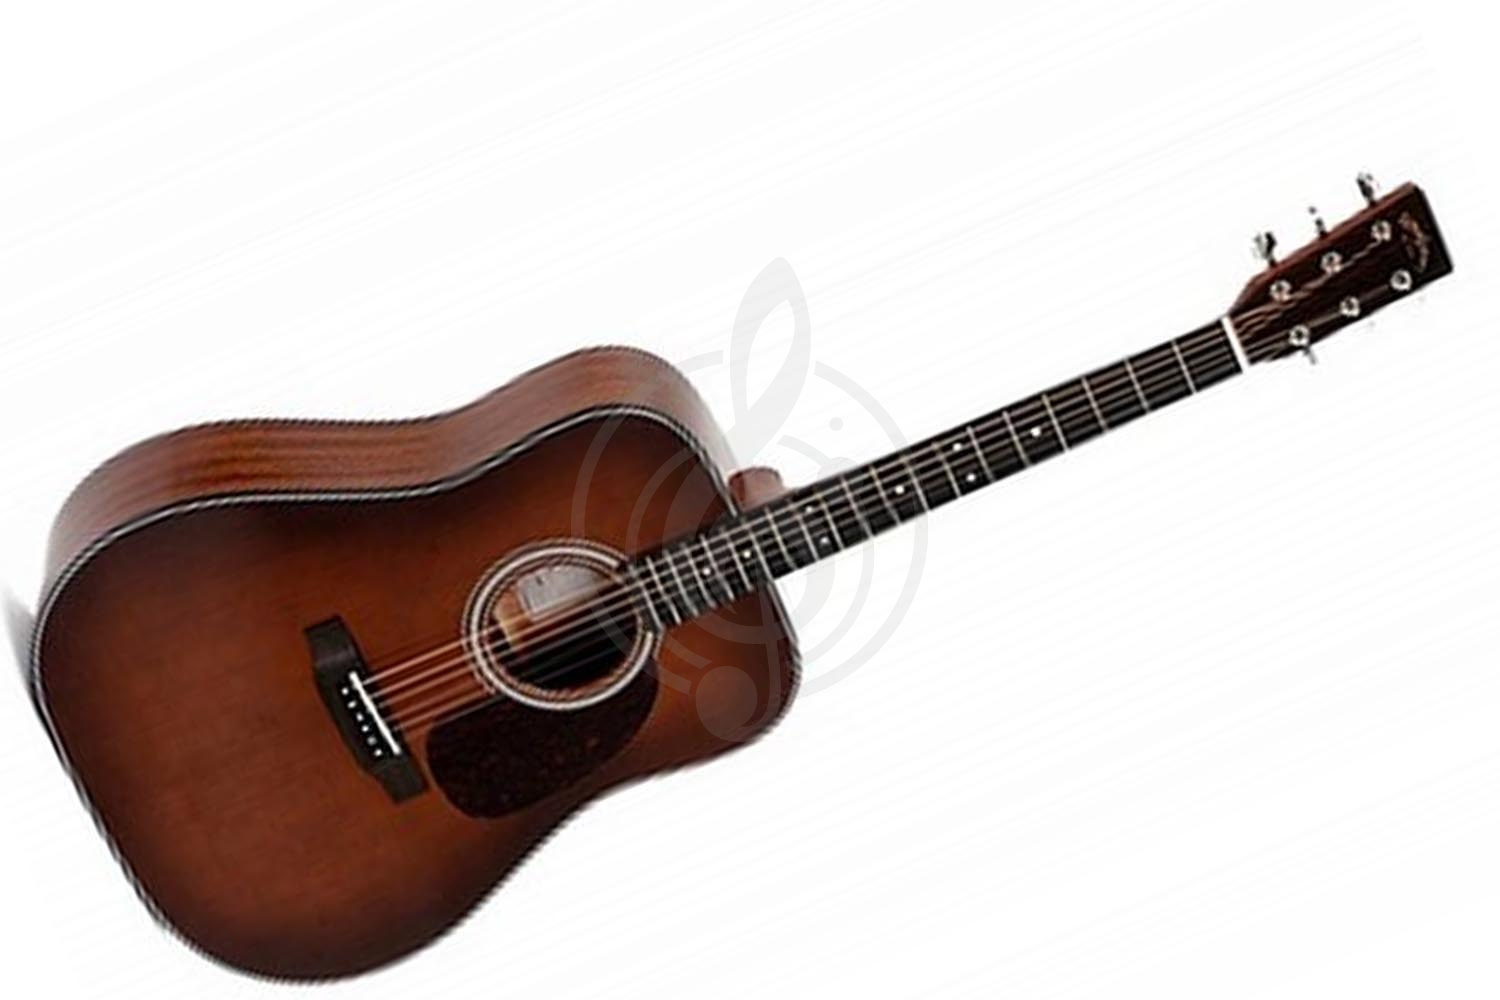 Акустическая гитара Акустические гитары Sigma Sigma DM-1ST-BR - акустическая гитара DM-1ST-BR - фото 1